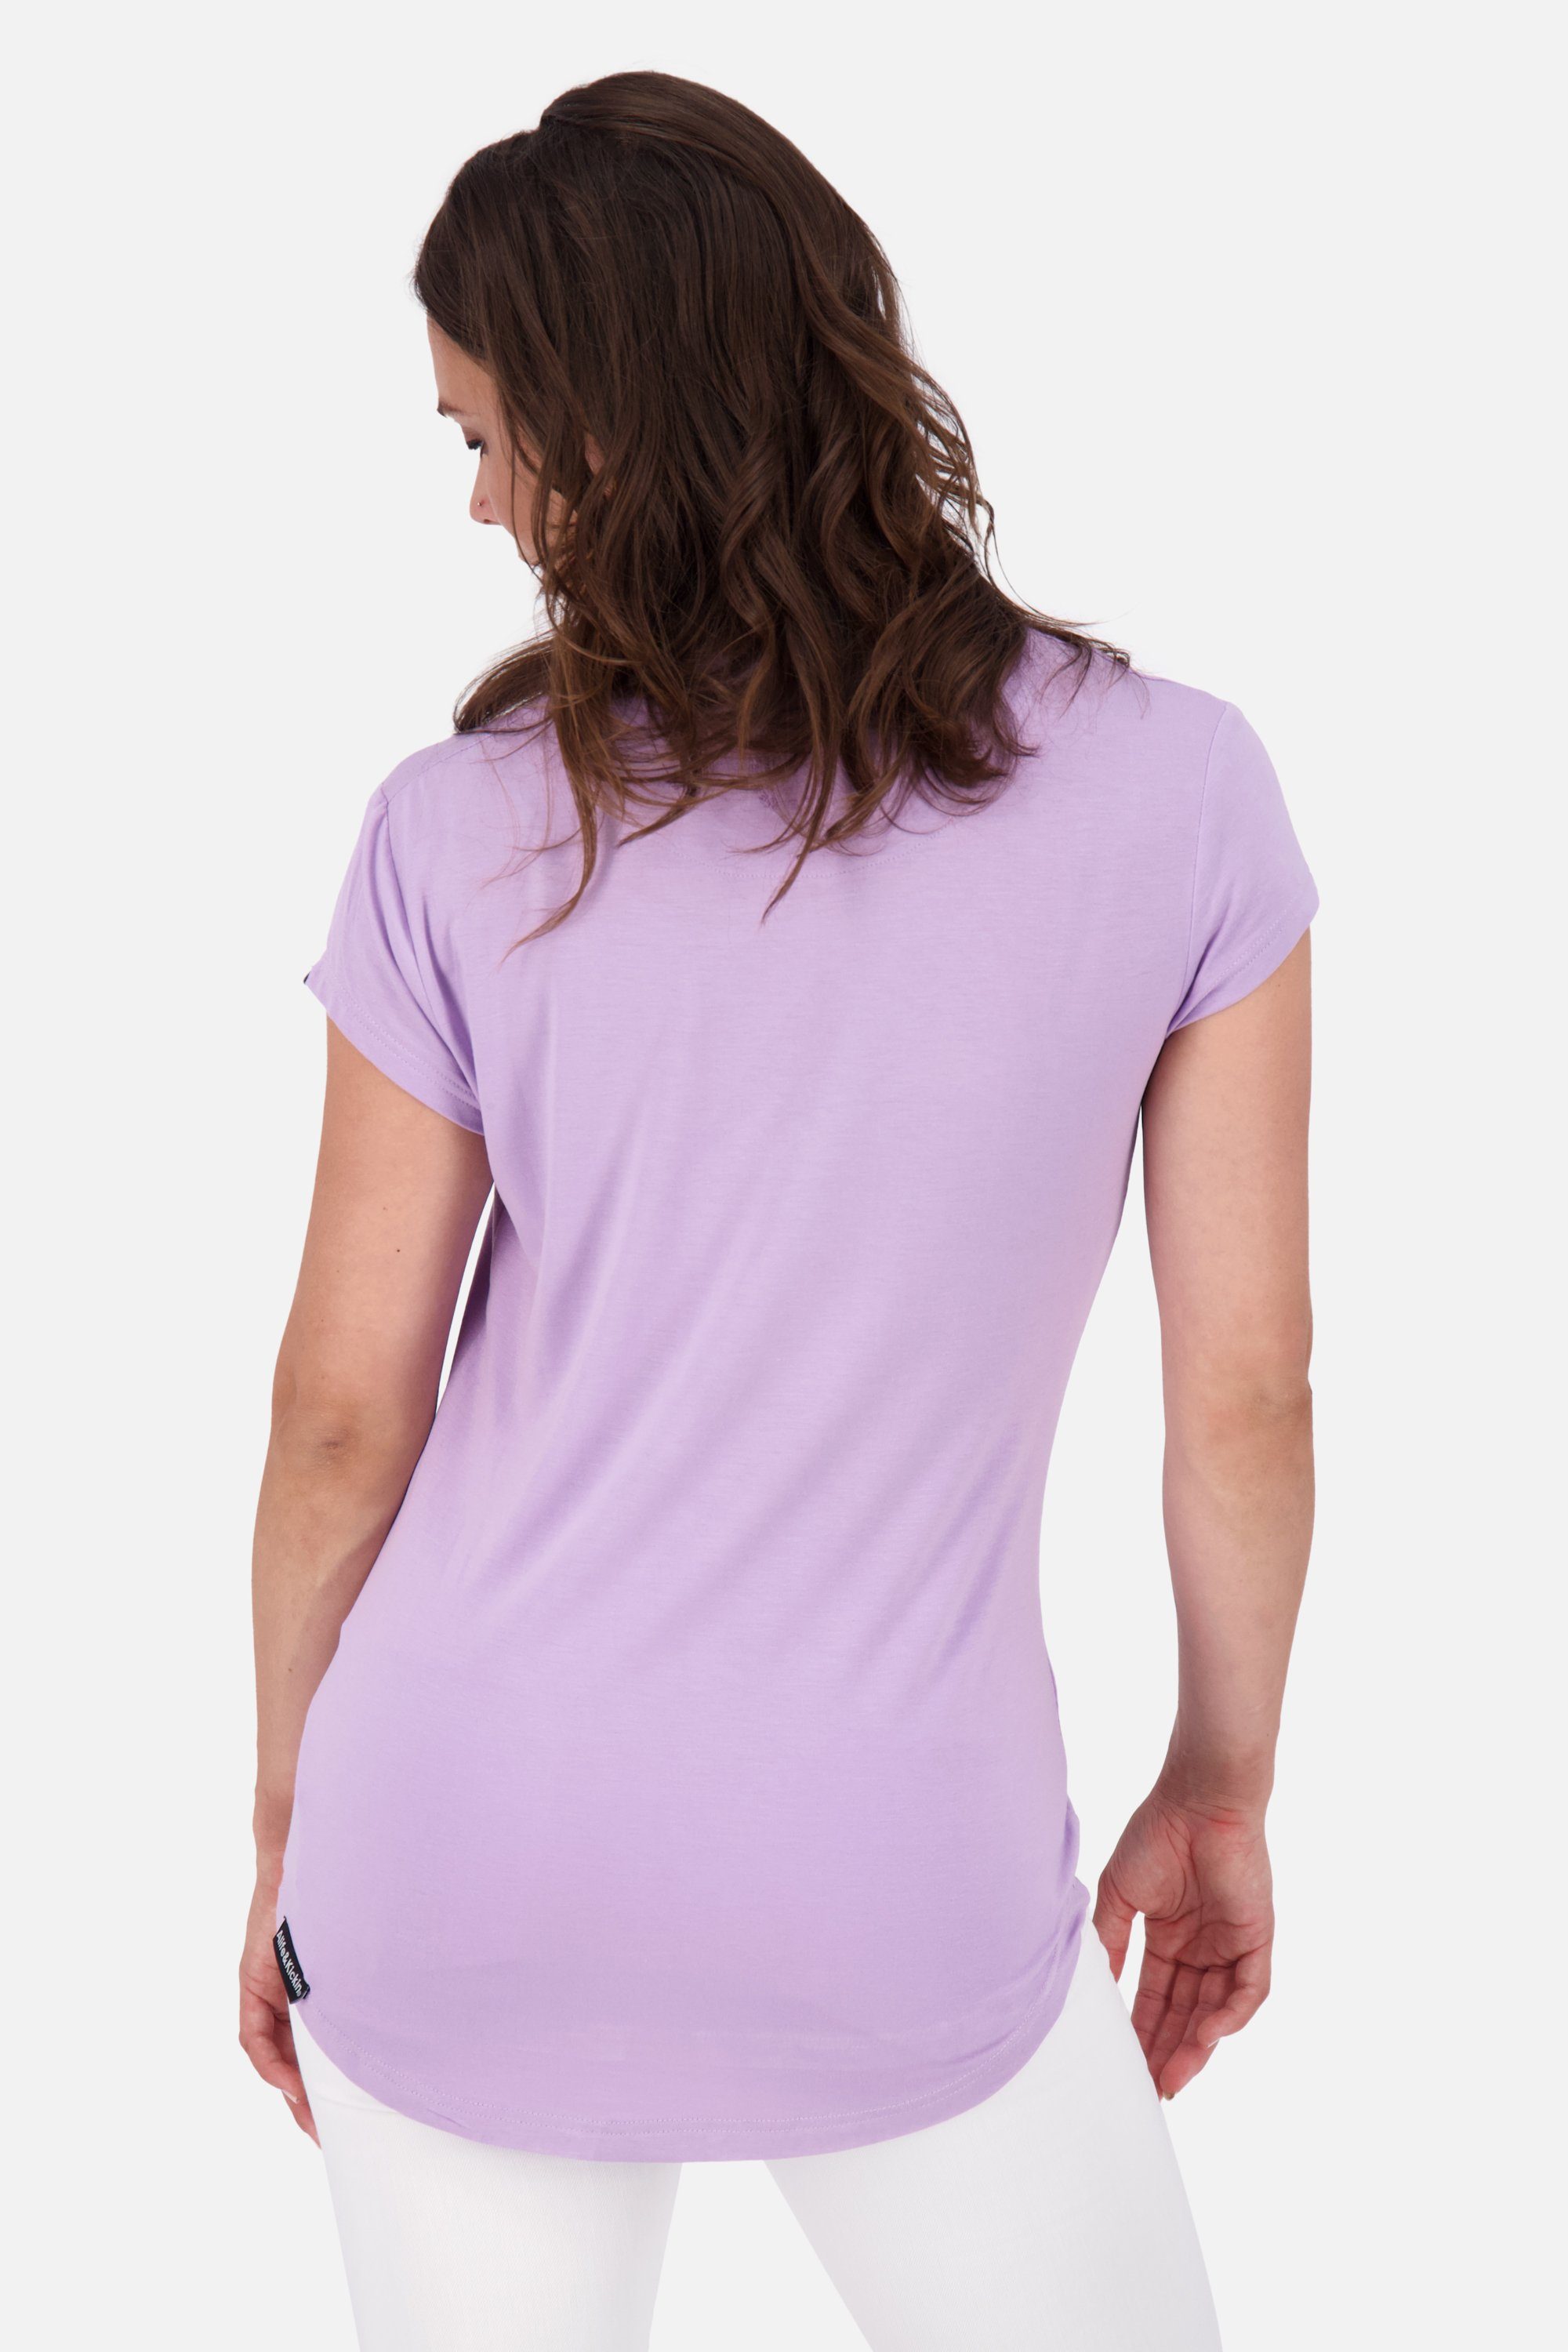 Alife & Kurzarmshirt, digital Kickin MimmyAK lavender Damen Rundhalsshirt Shirt A Shirt